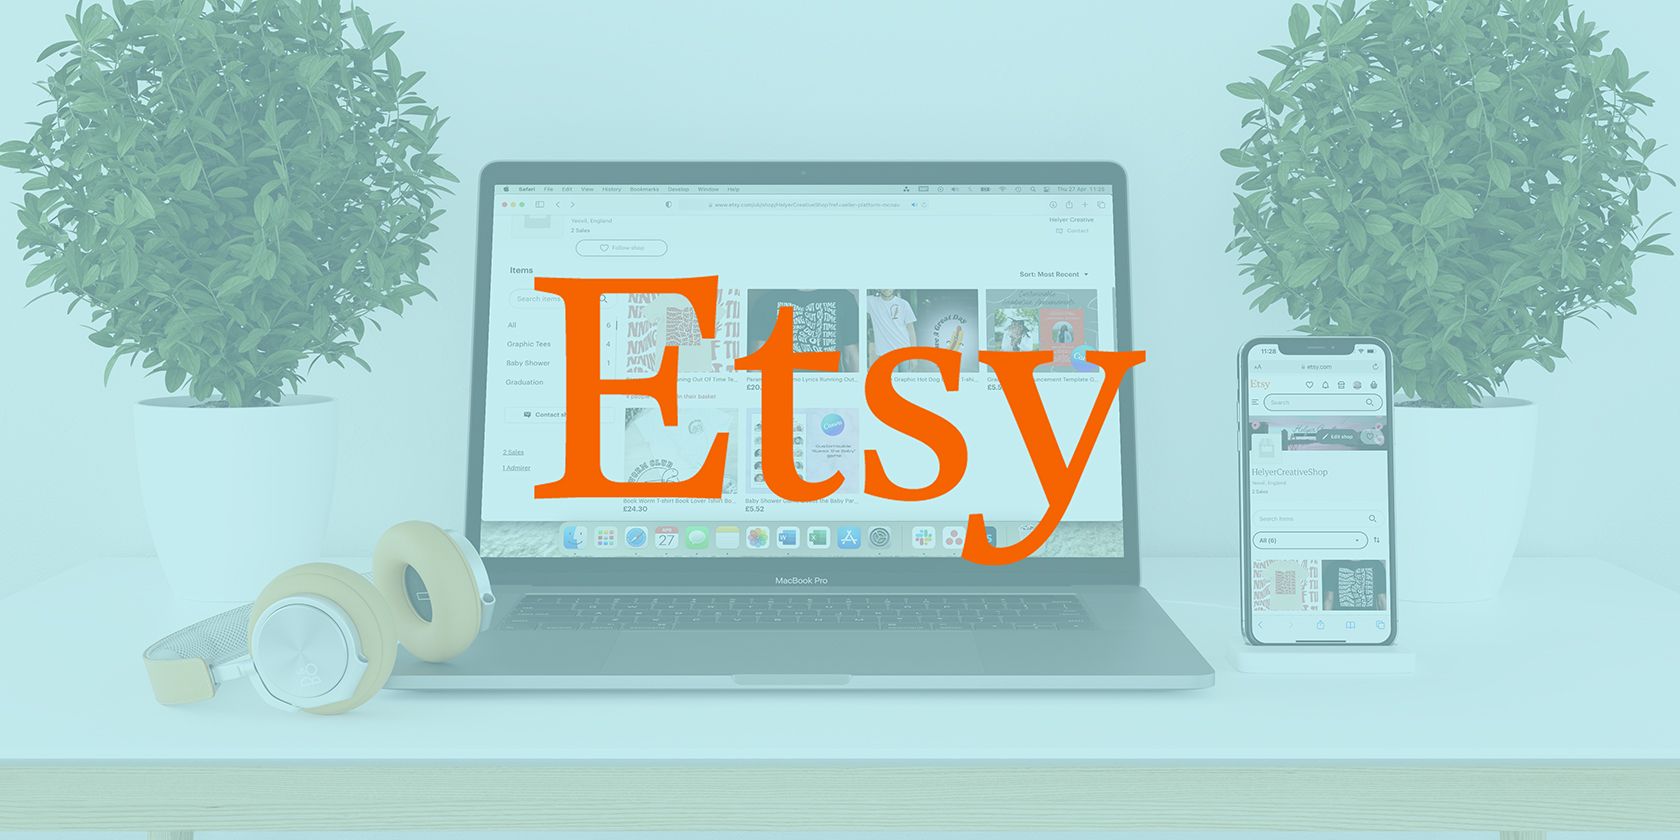 Etsy logo on background of laptop showing Etsy website.